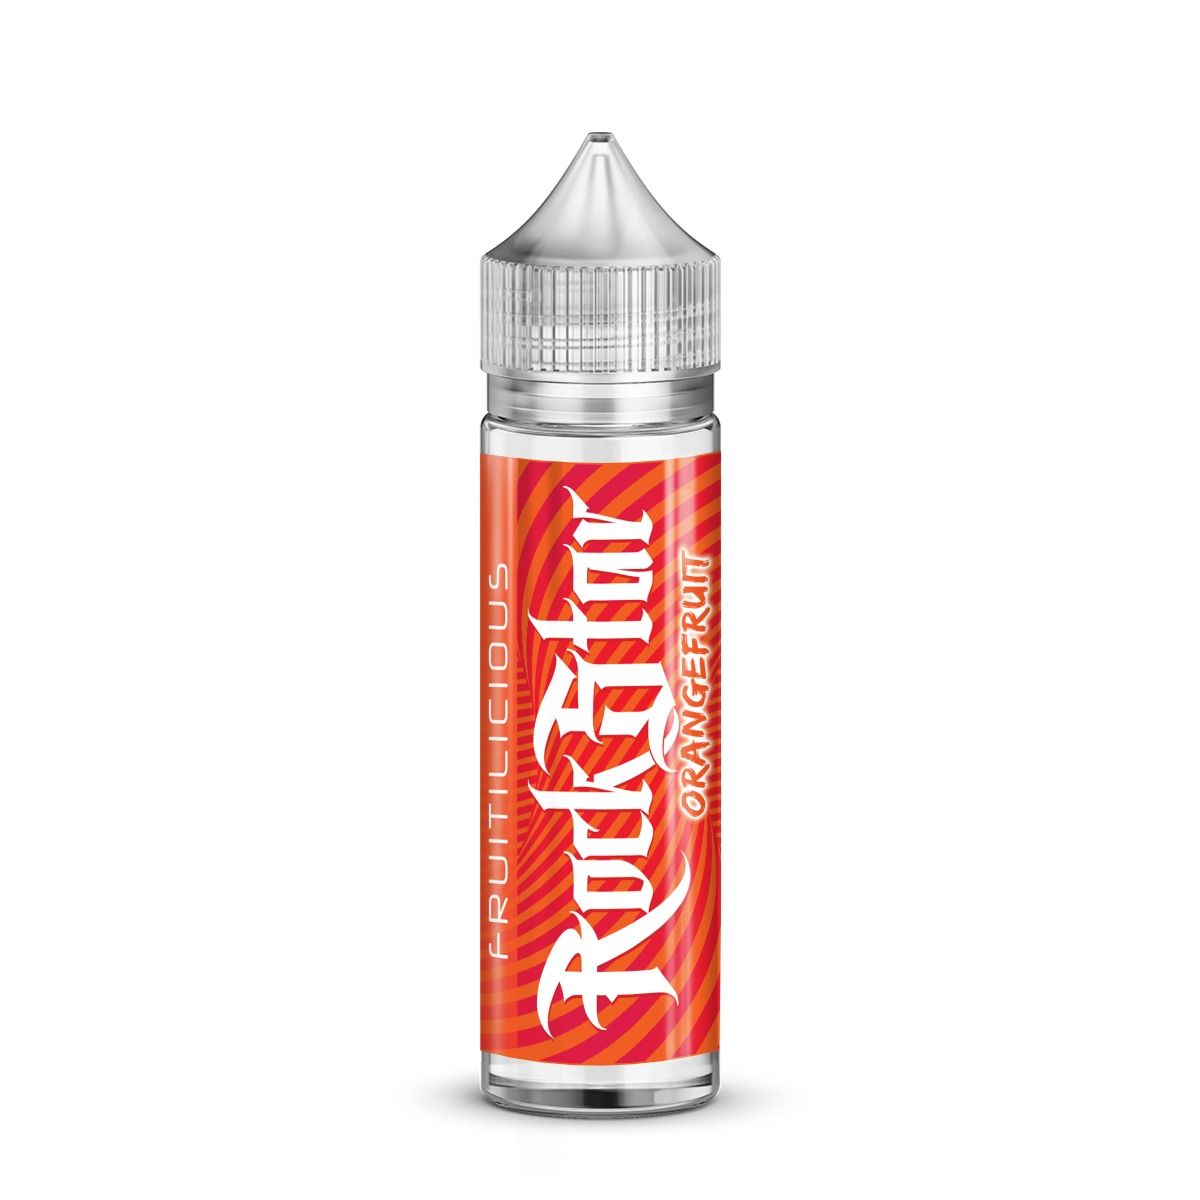 Orangefruit E-liquid by Rockstar 50ml Shortfill